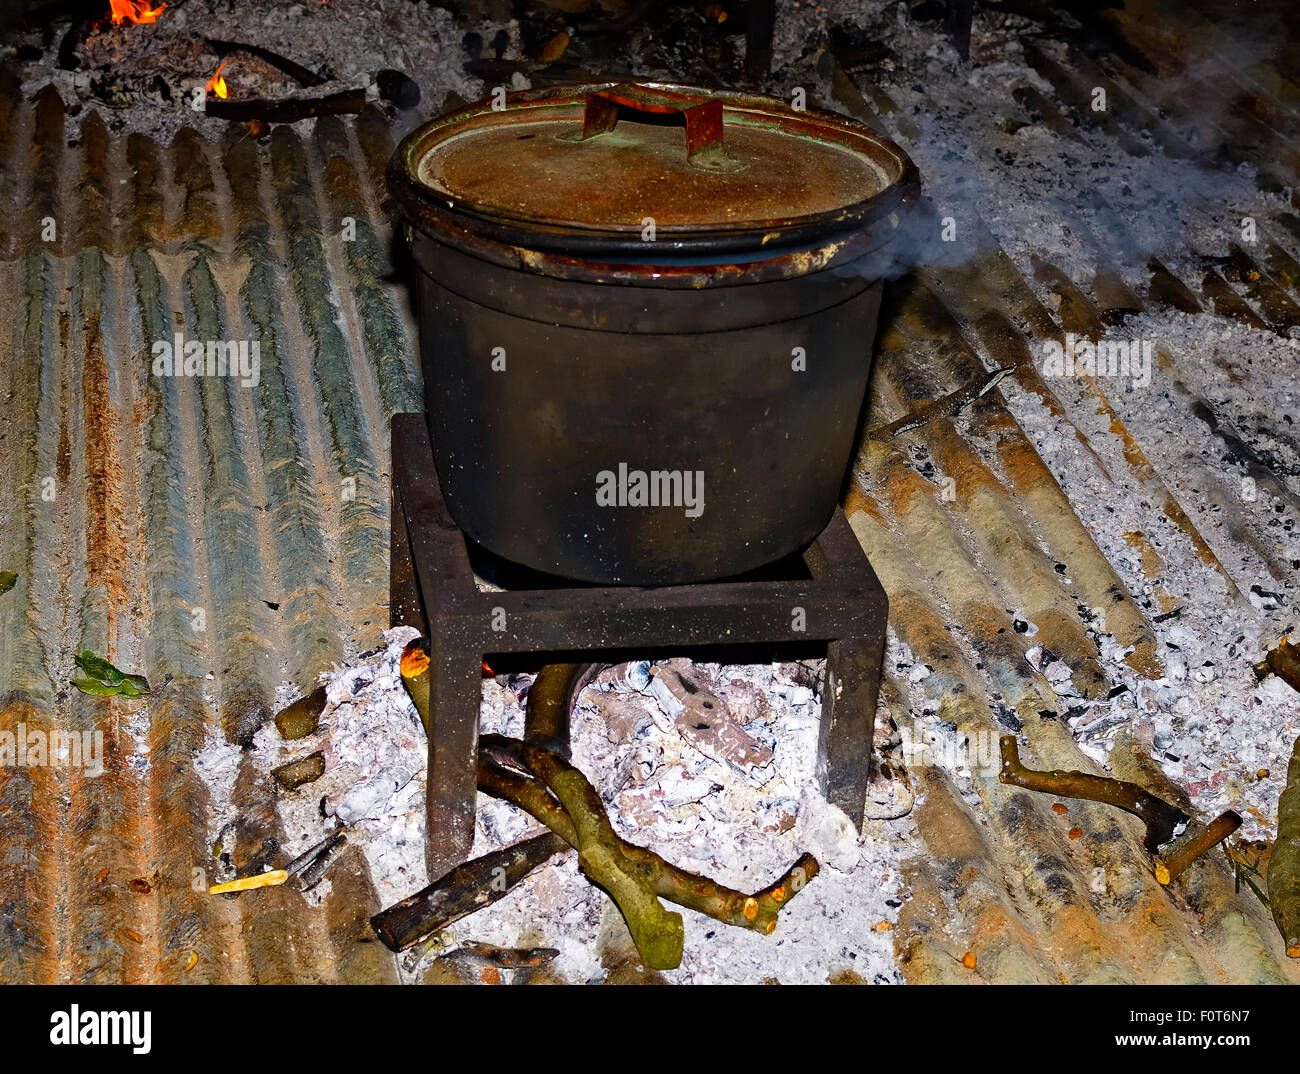 Caldero fuego cocinar vegetales con un gran caldero de hierro a través de la quema de leña Foto de stock